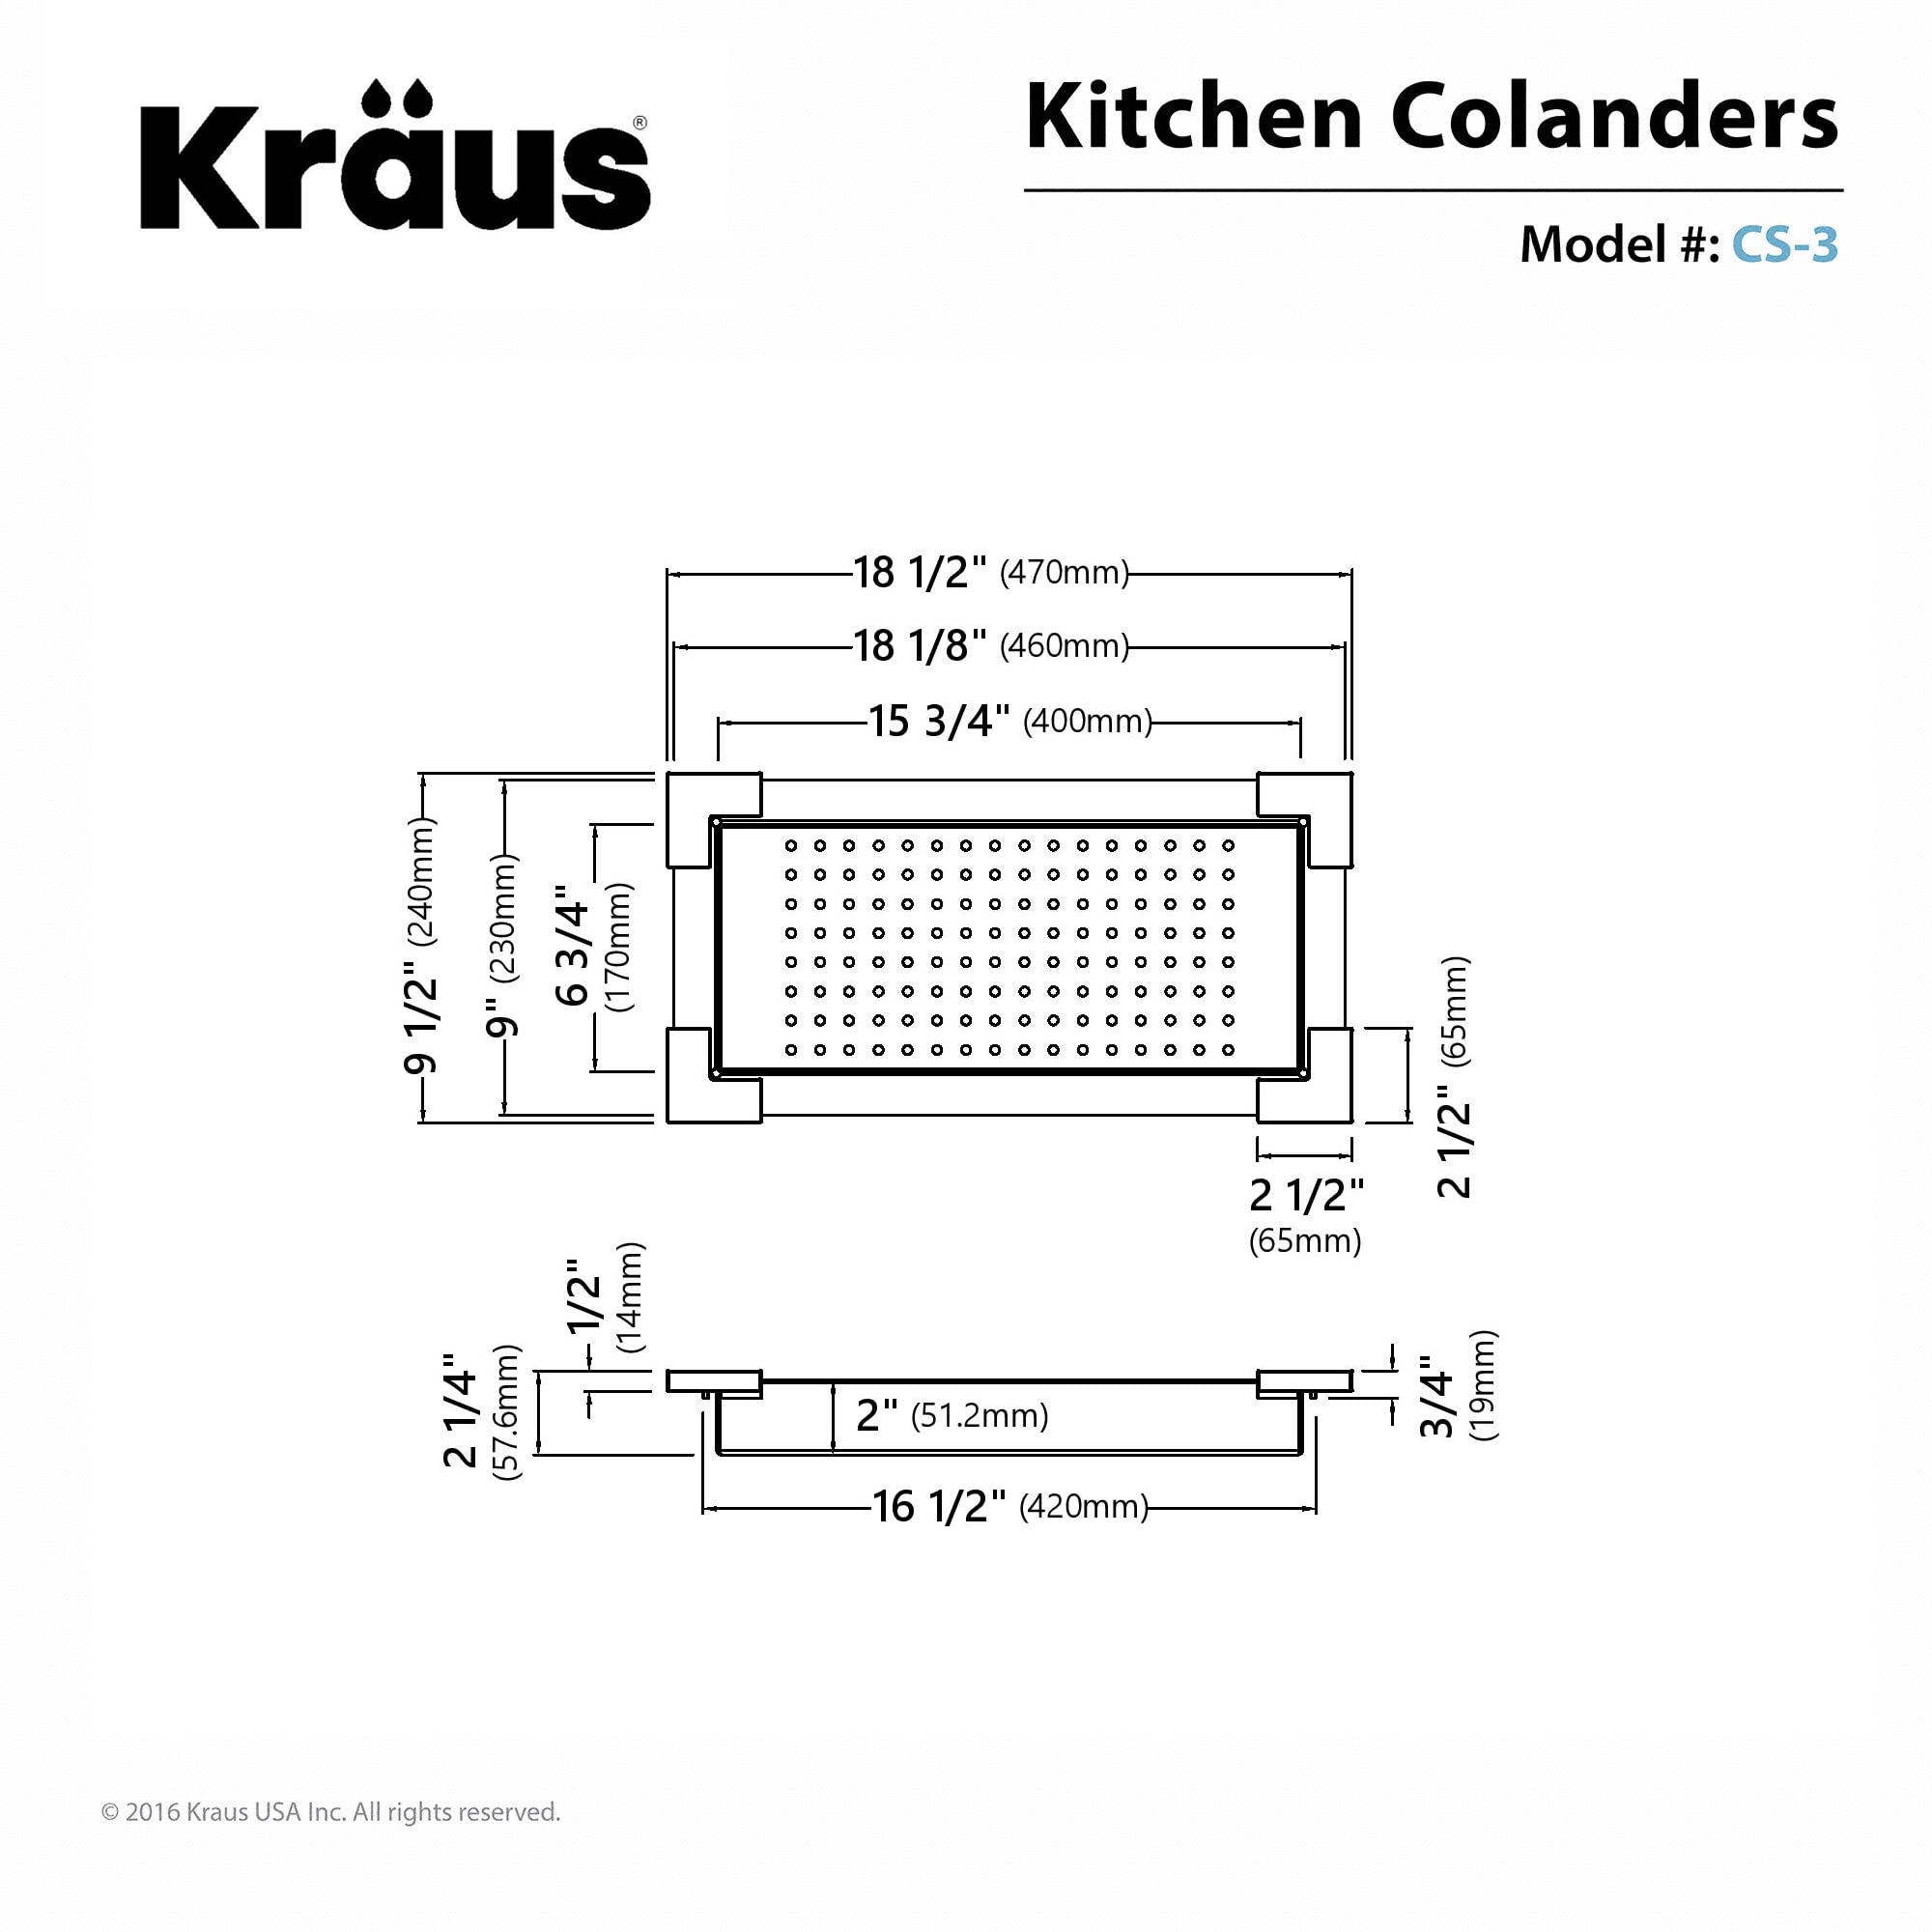 Kraus CS-3 Stainless Steel Colander, 18 1/2 inch